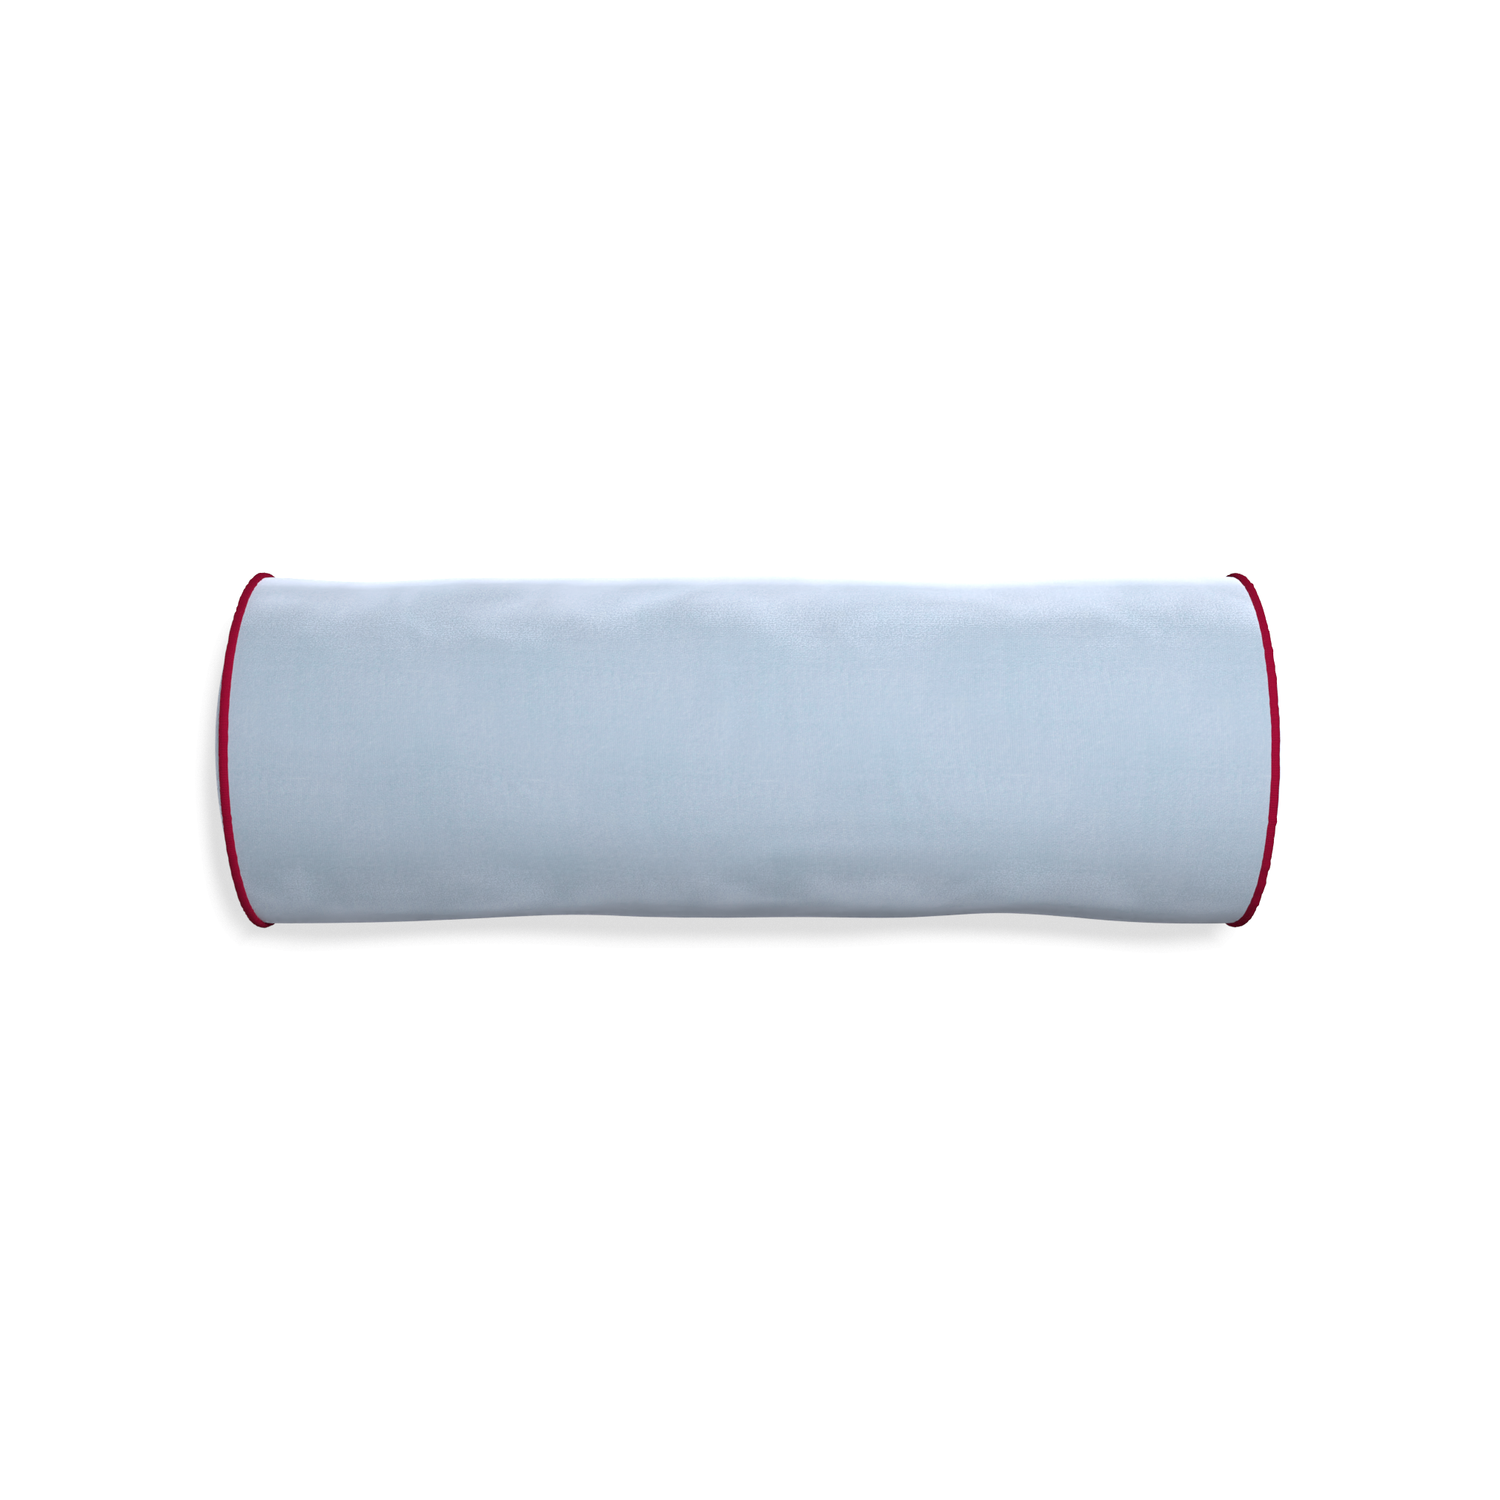 bolster light blue velvet pillow with dark red piping